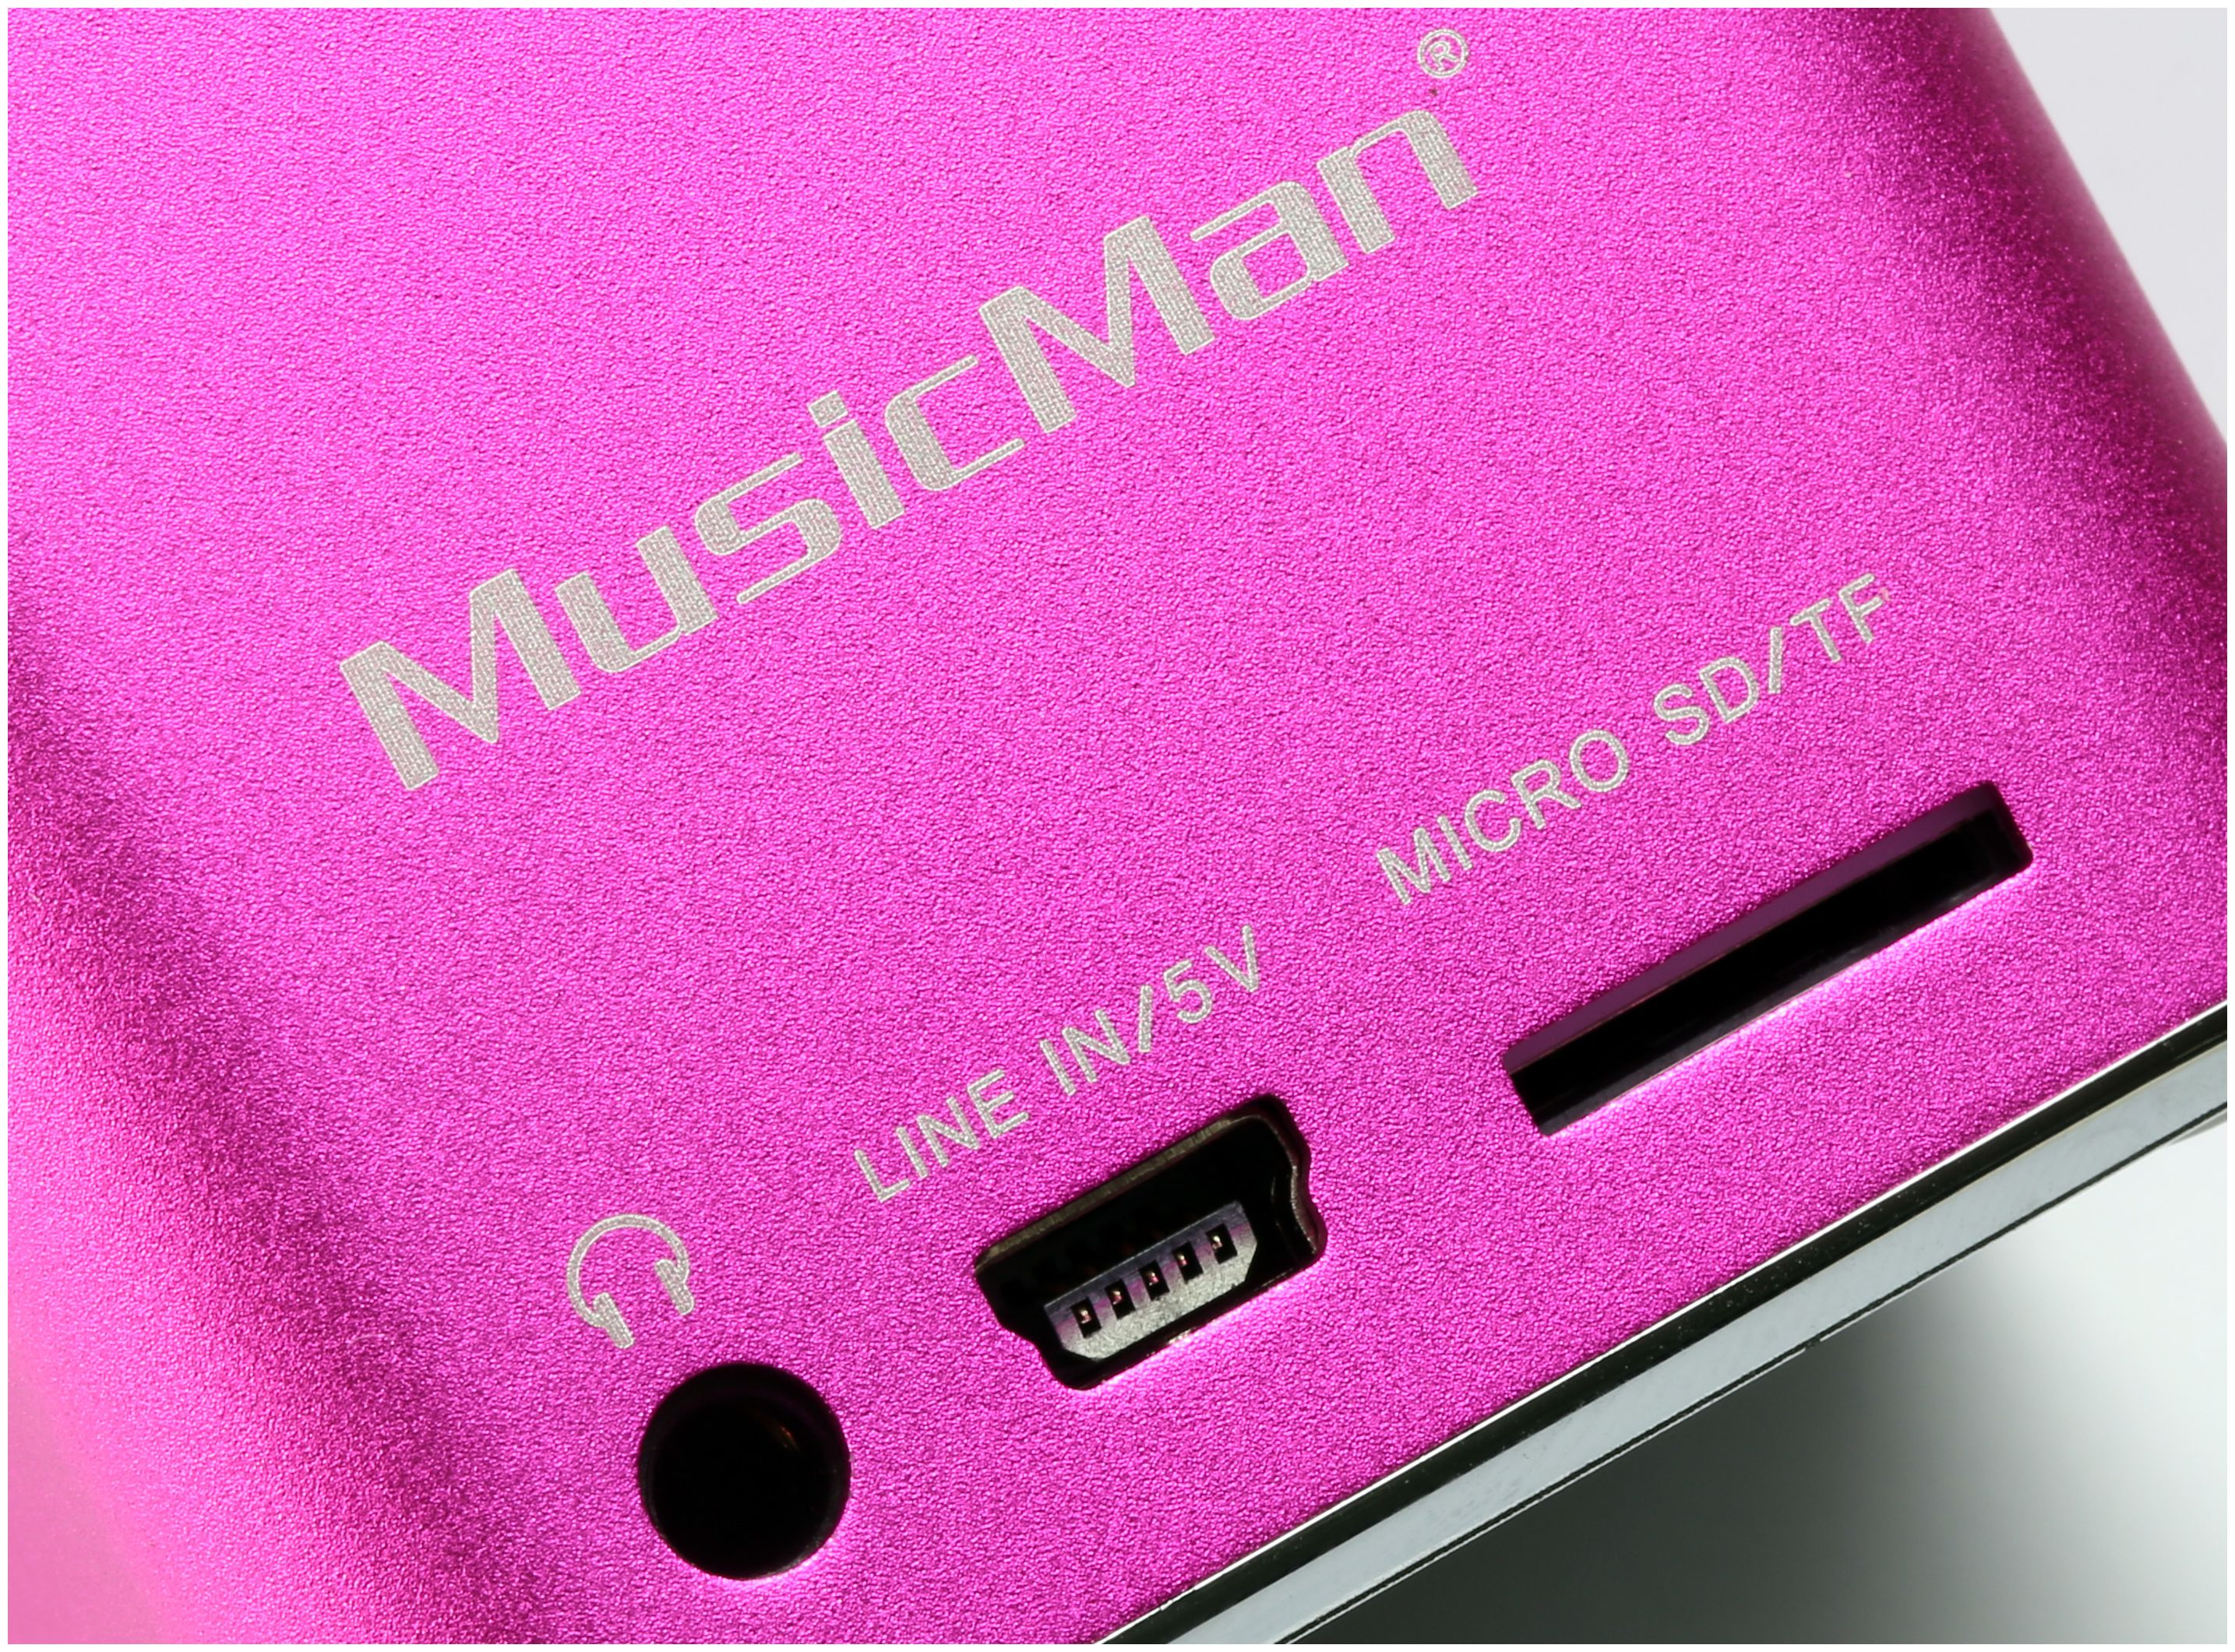 Technaxx Mini expert (Pink) portabler Technomarkt von Lautsprecher MusicMan